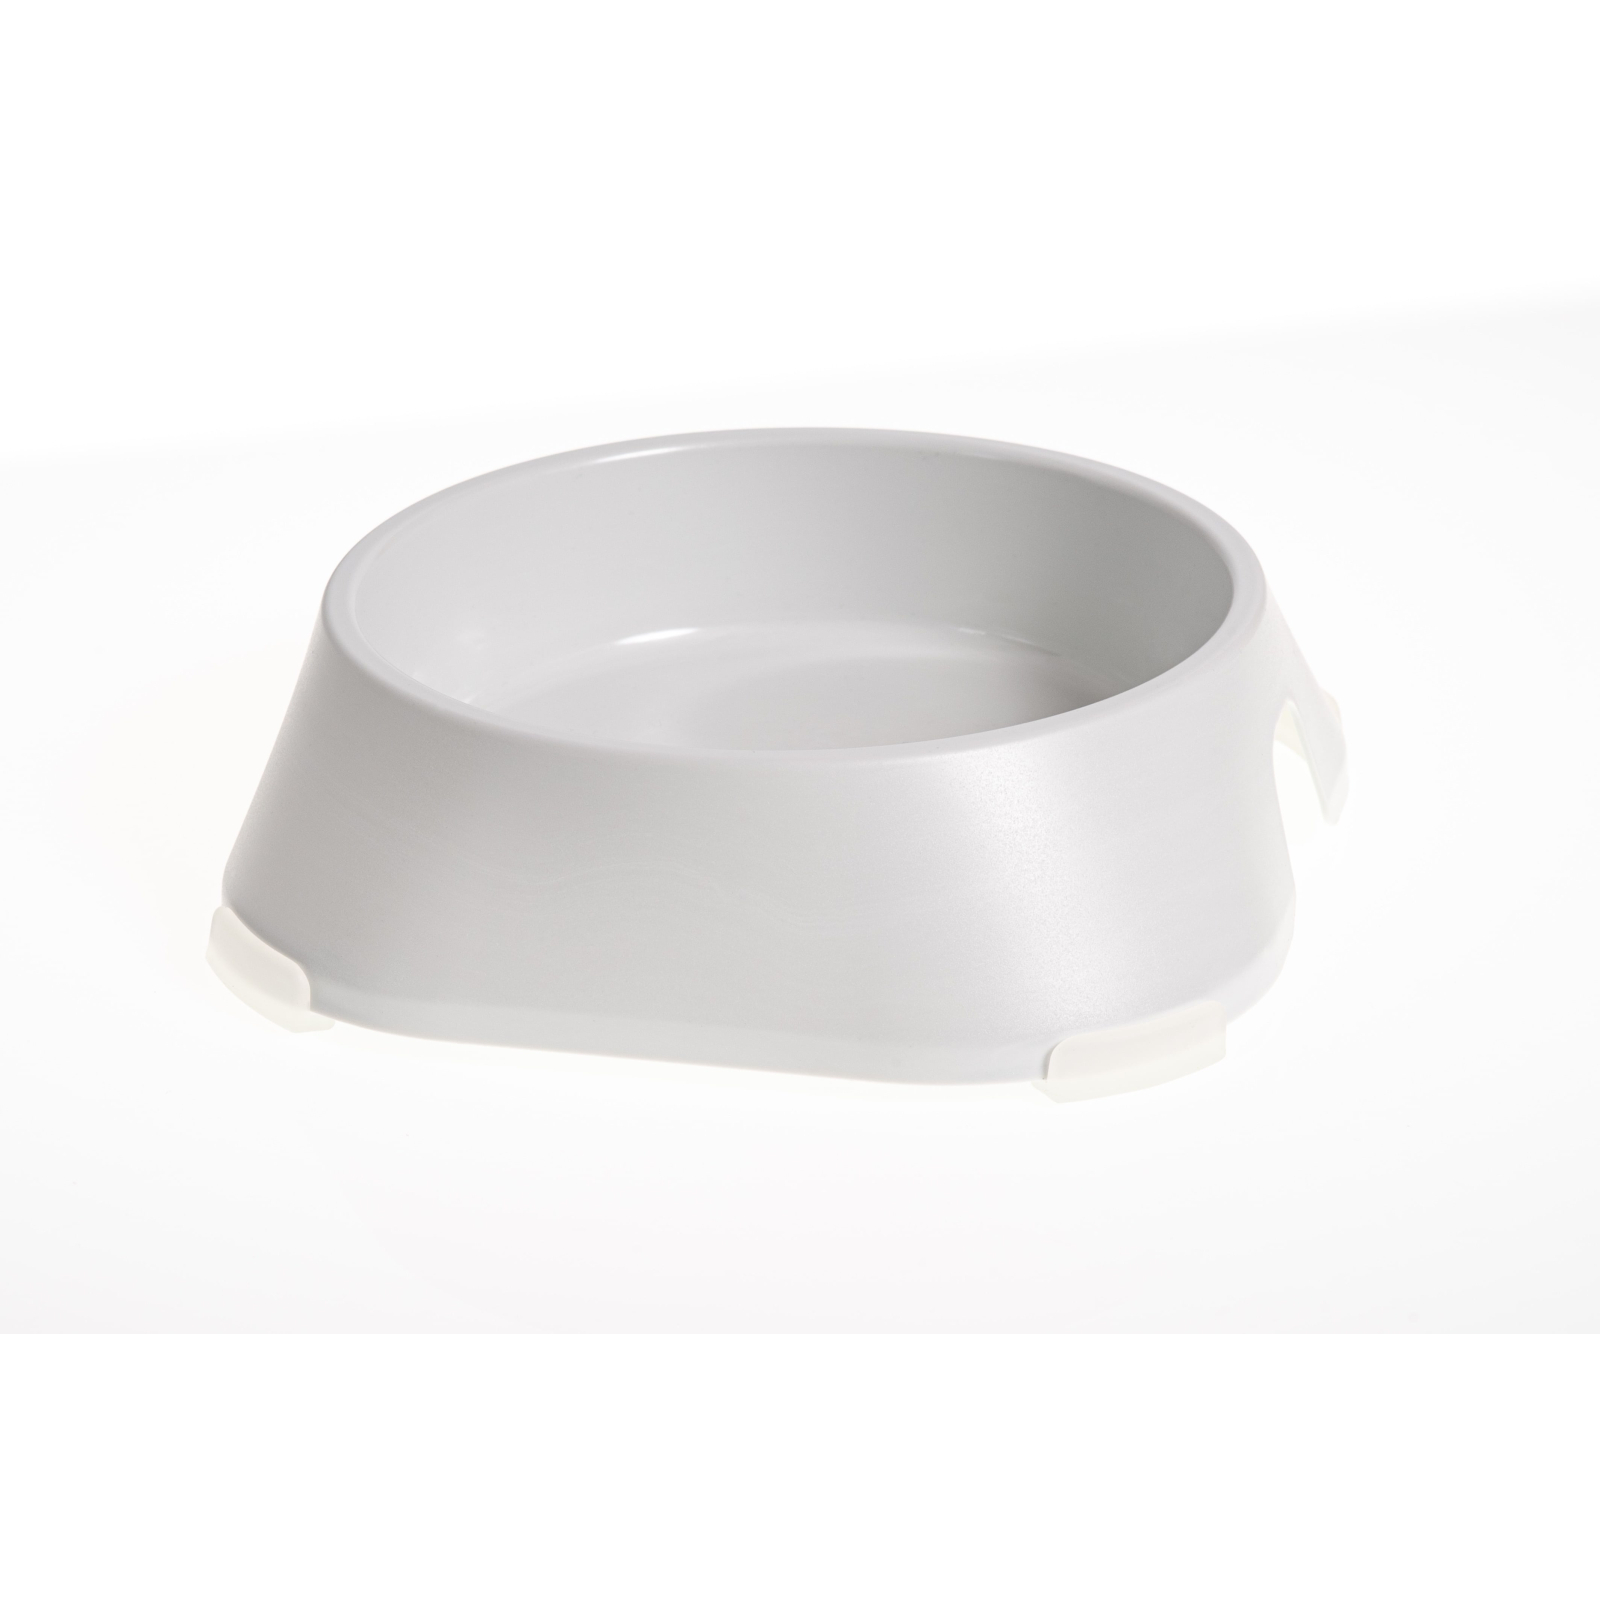 Посуд для собак Fiboo Миска без антиковзких накладок M біла (FIB0153)